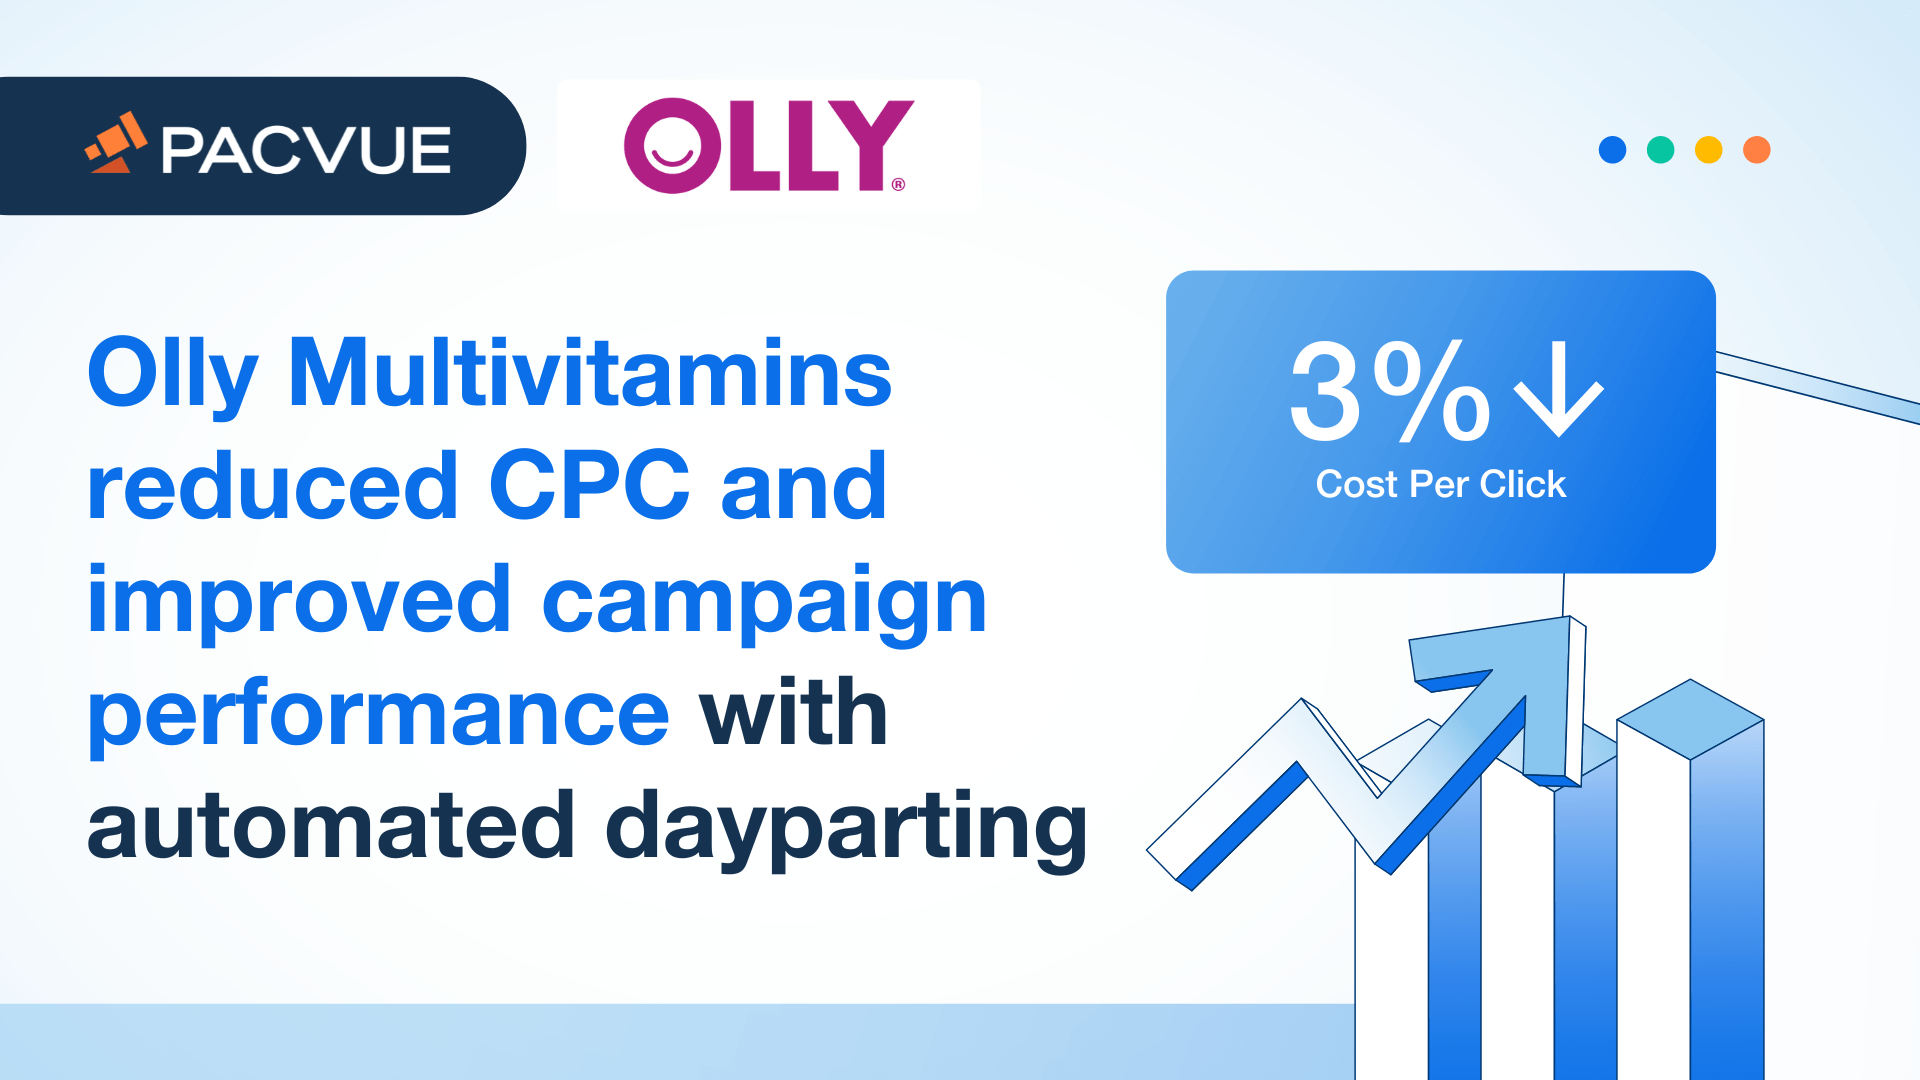 Olly Multivitamins a réduit le CPC et amélioré les performances de ses campagnes grâce à l'automatisation du dayparting.